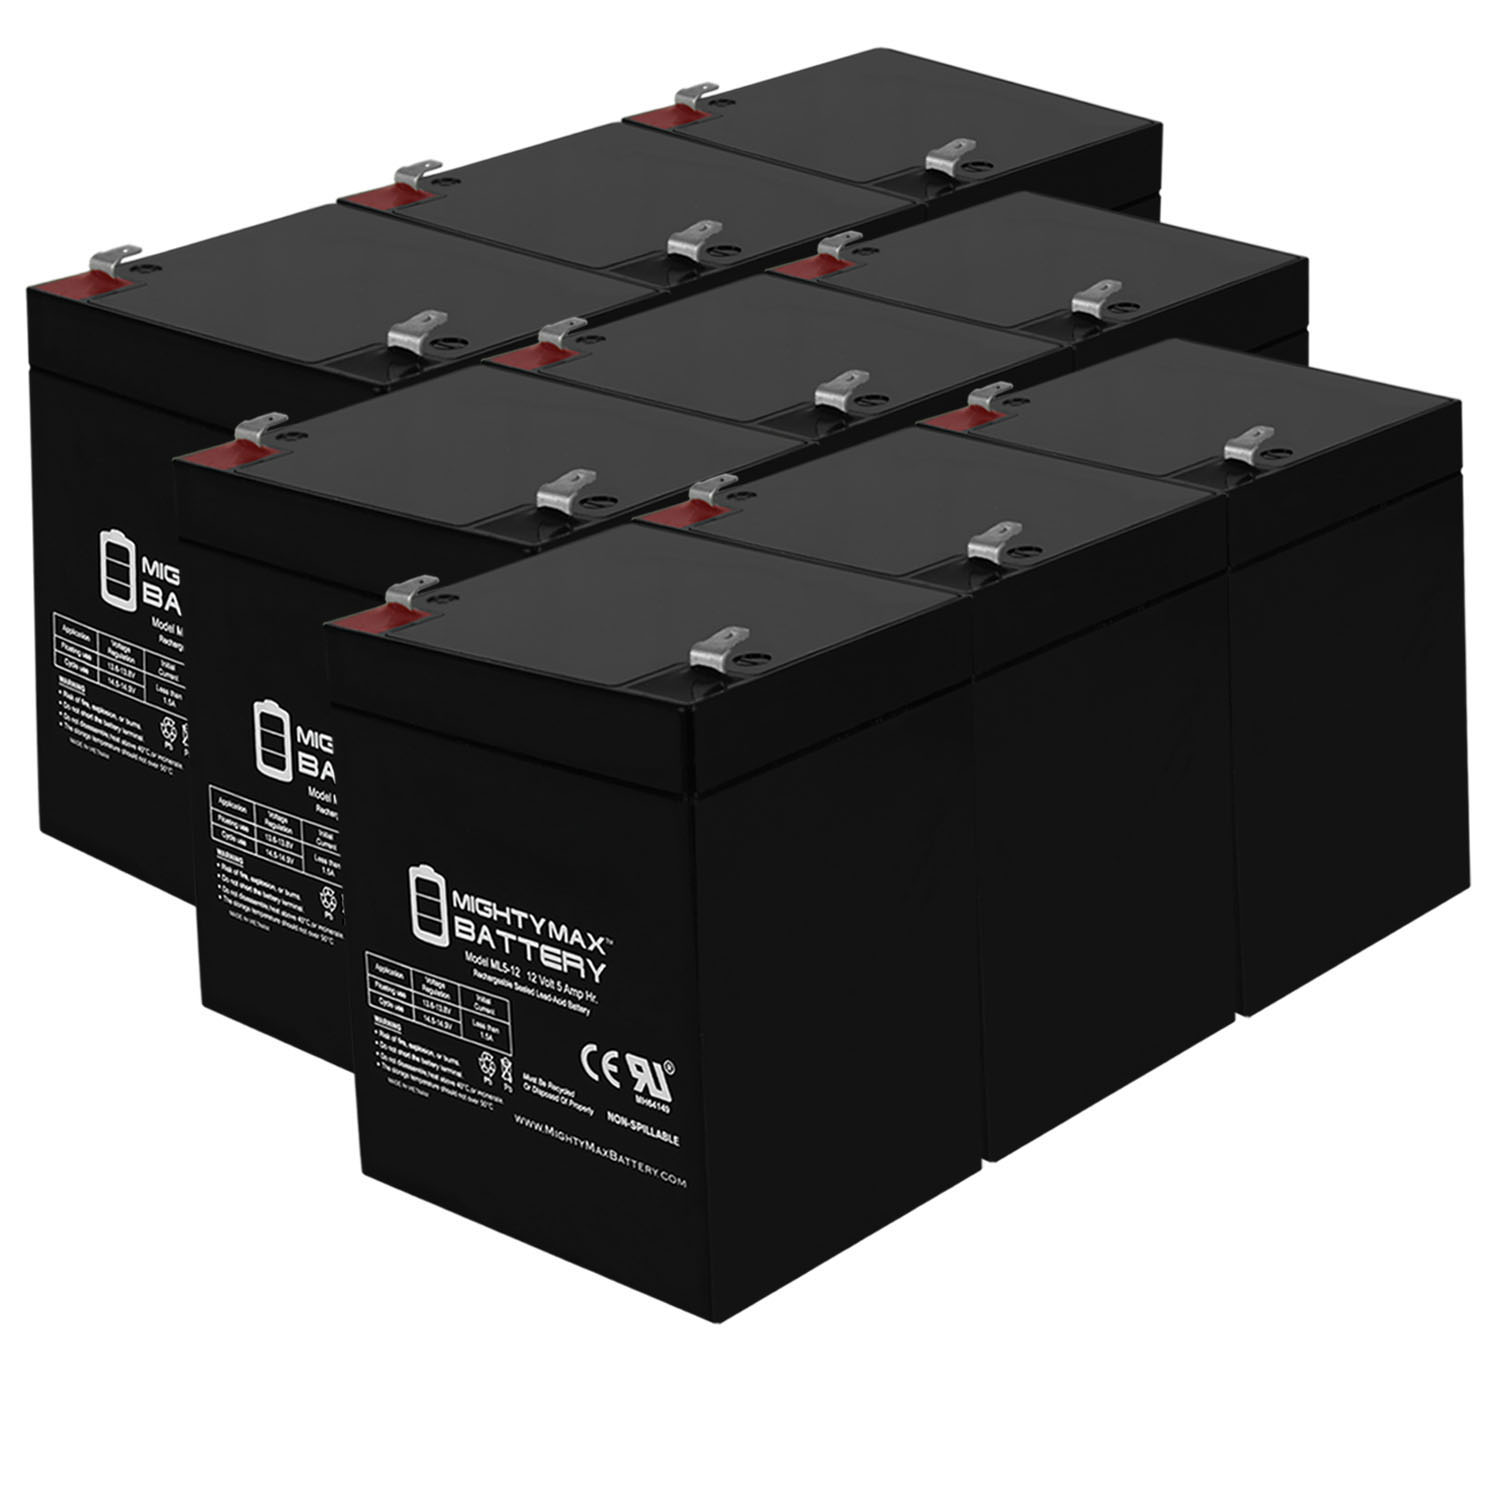 ML5-12 - 12V 5AH Battery for Napco Alarms MA1016LKDL - 9 Pack